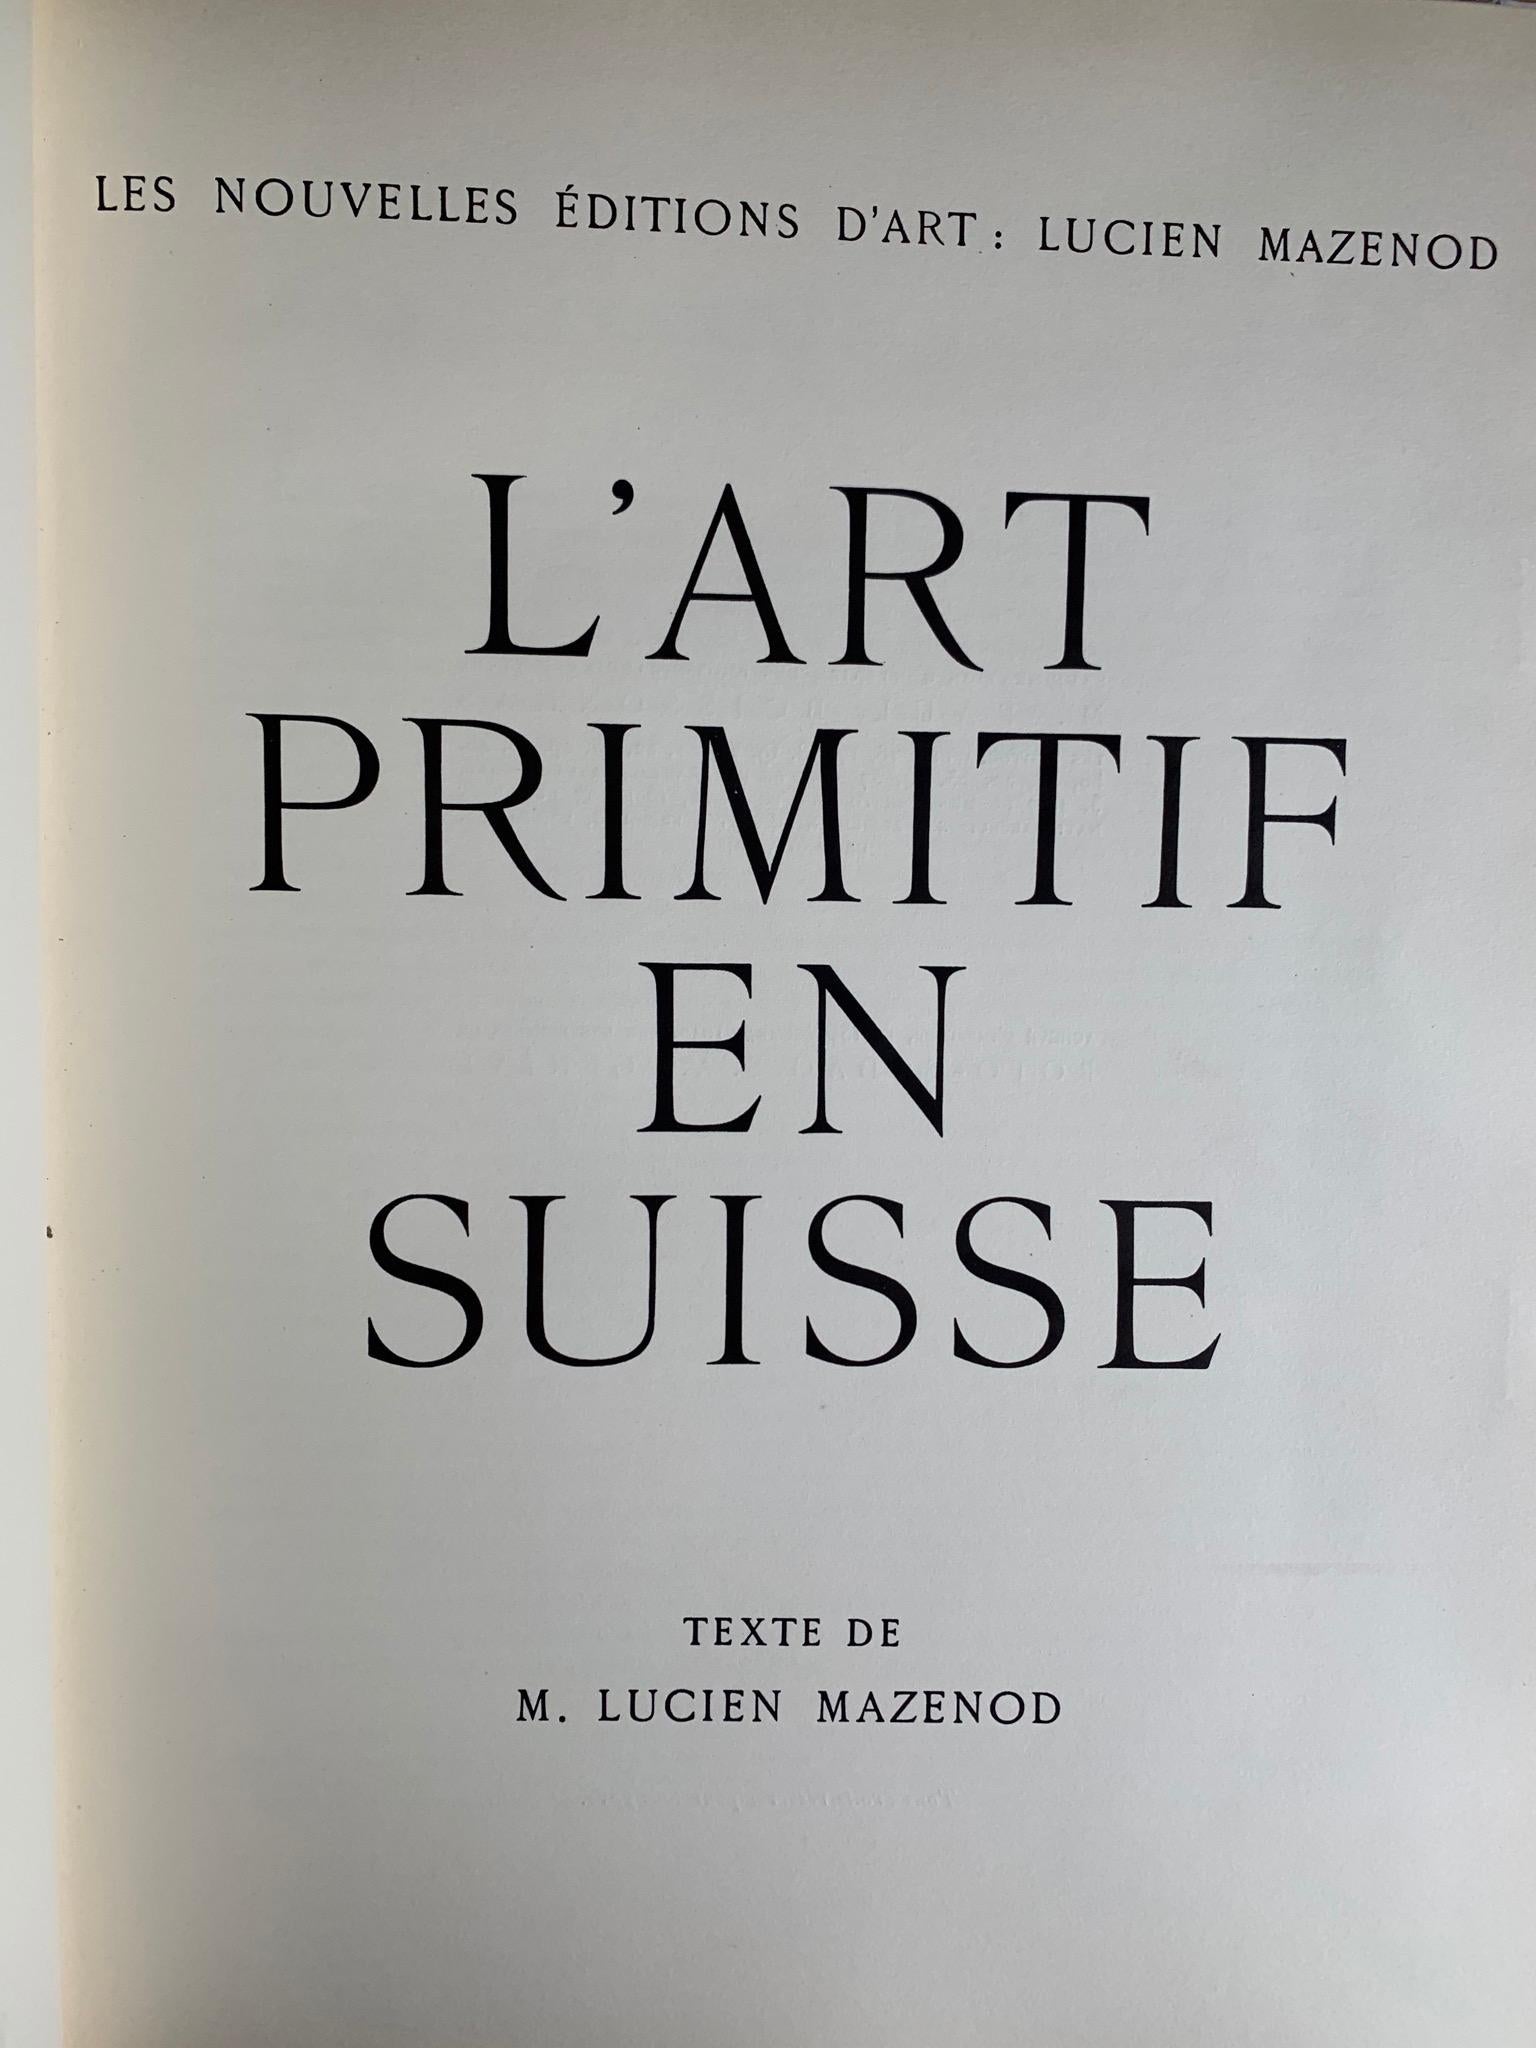 French L'Art Primitif En Suisse, Roman and Gothique, Lucien Mazenod, 1948